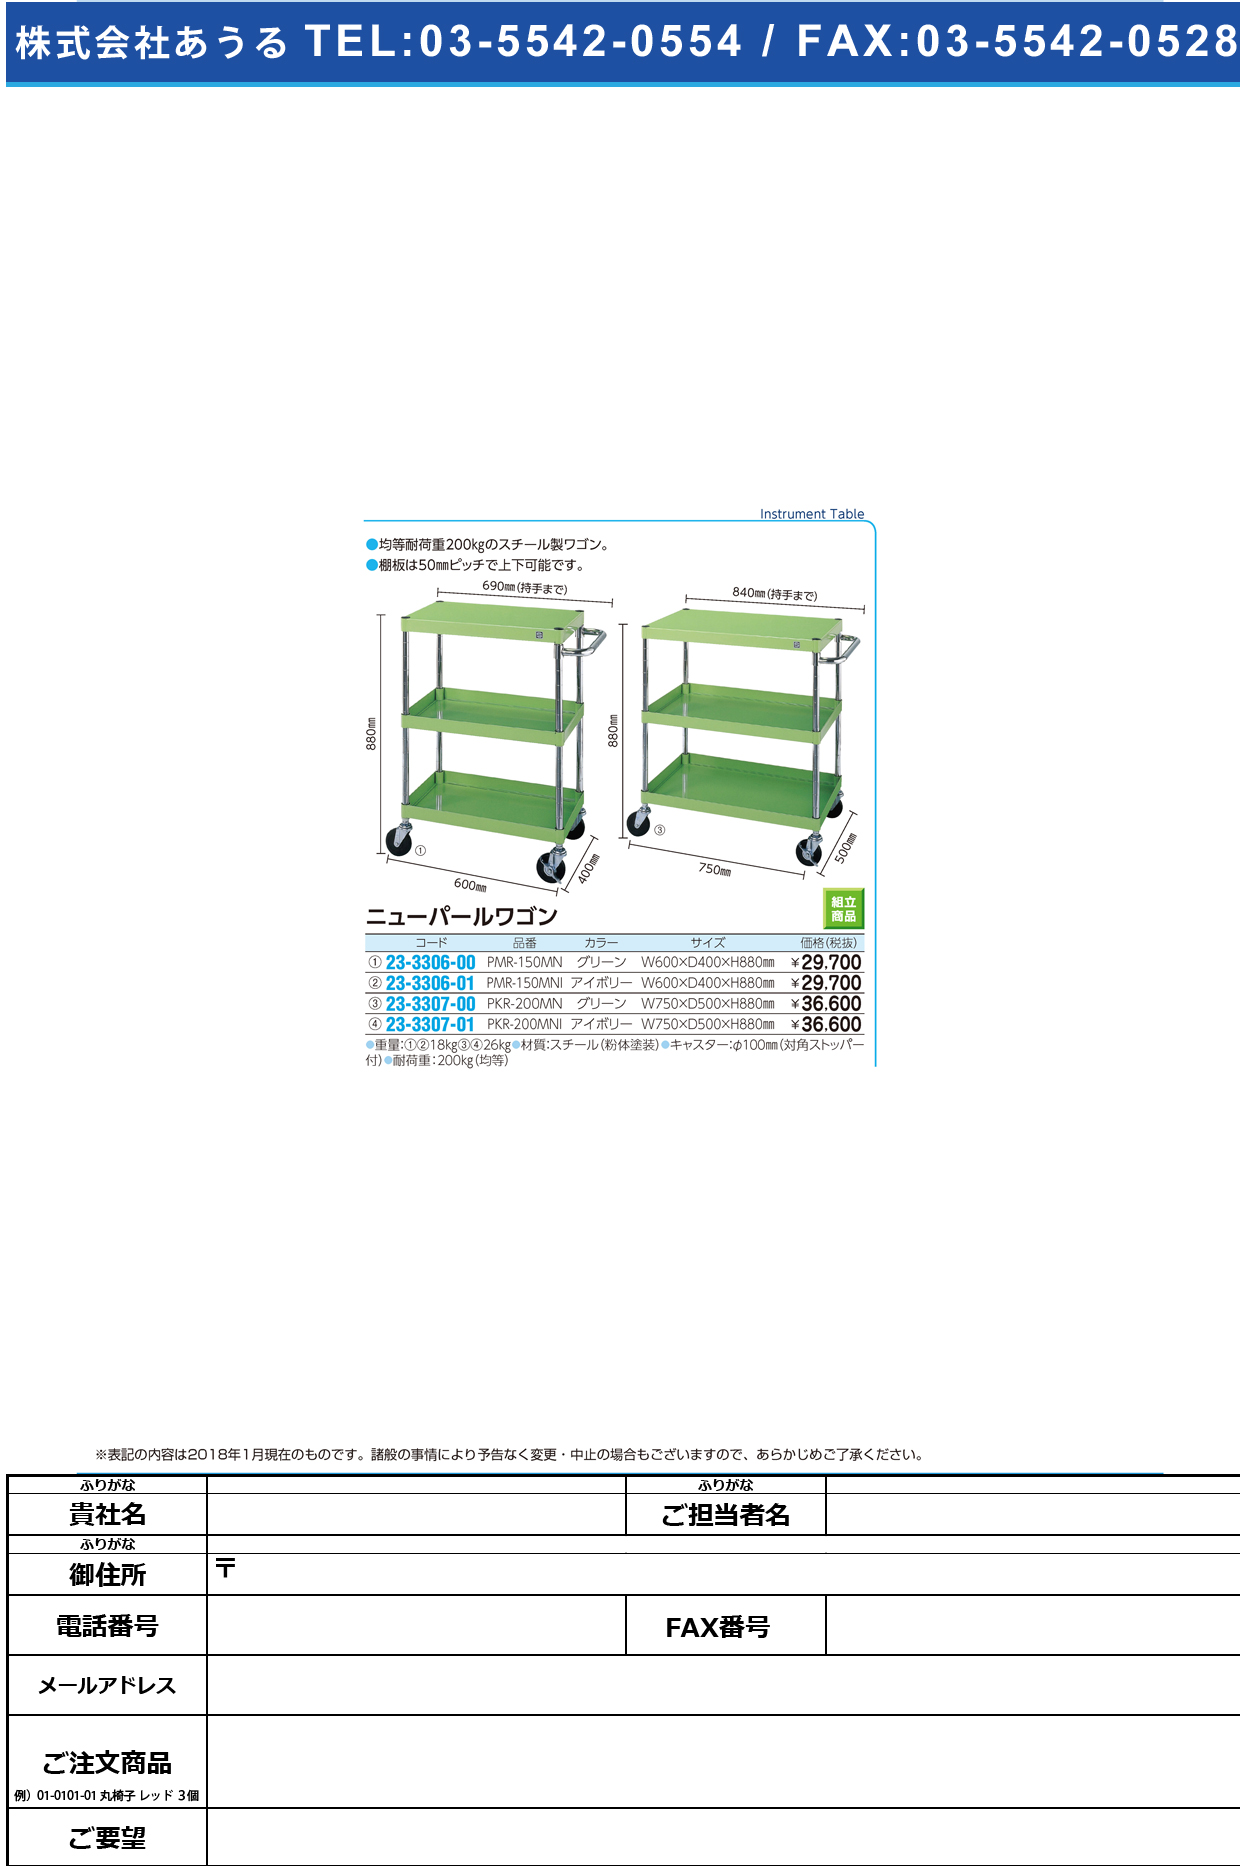 (23-3307-00)ニューパールワゴン PKR-200MN(ｸﾞﾘｰﾝ) ﾆｭｰﾊﾟｰﾙﾜｺﾞﾝ【1台単位】【2018年カタログ商品】